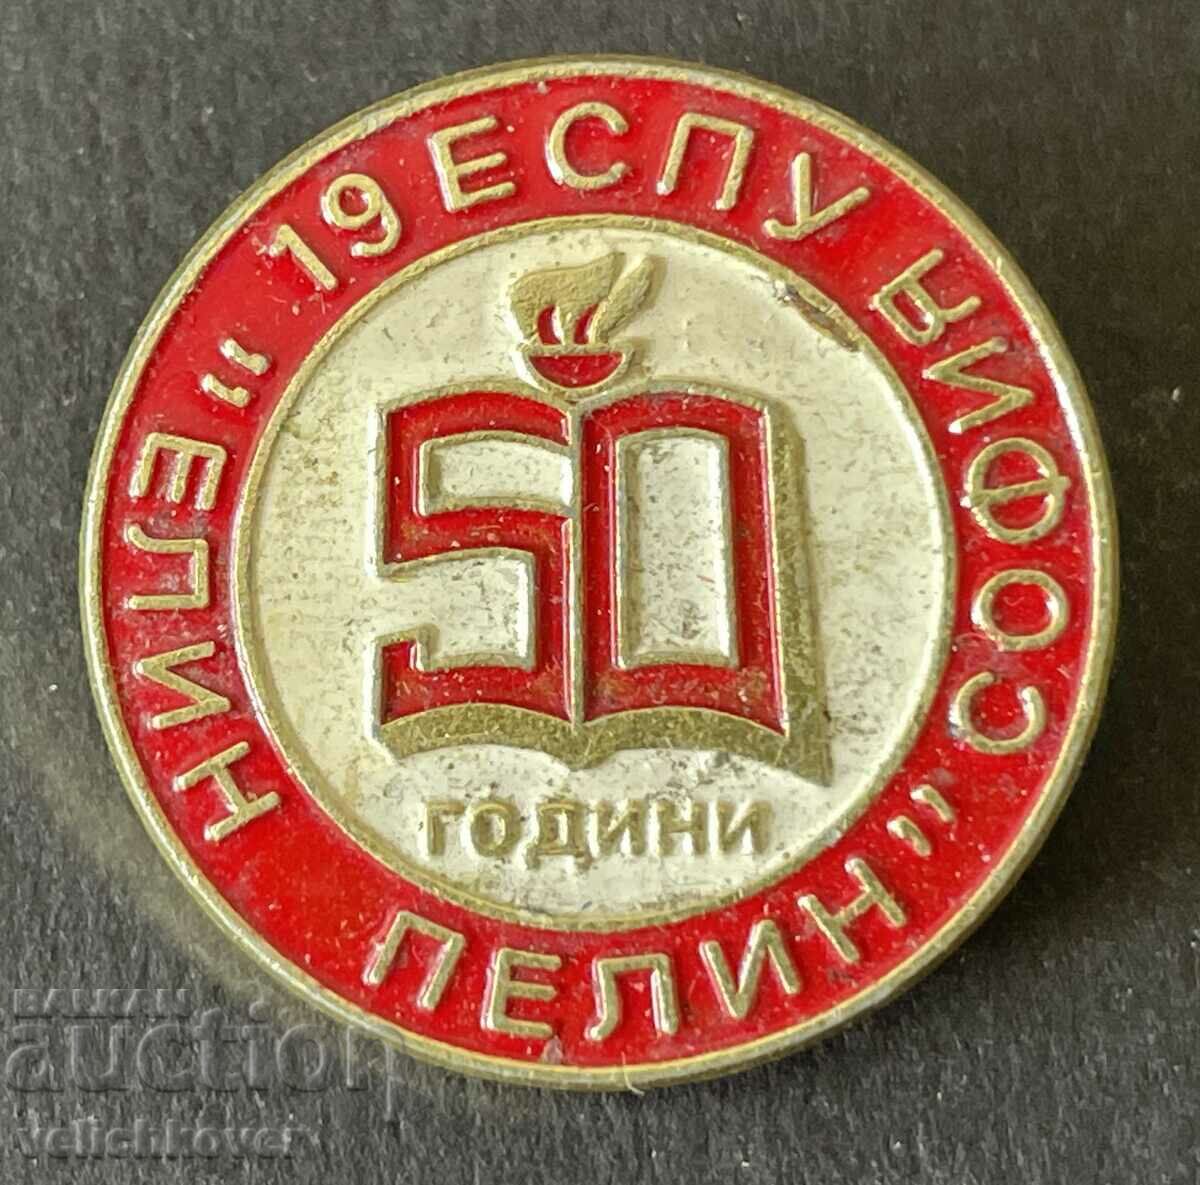 36953 Bulgaria semn 50 ani. Școala a XIX-a de limbi străine Elin Pelin So